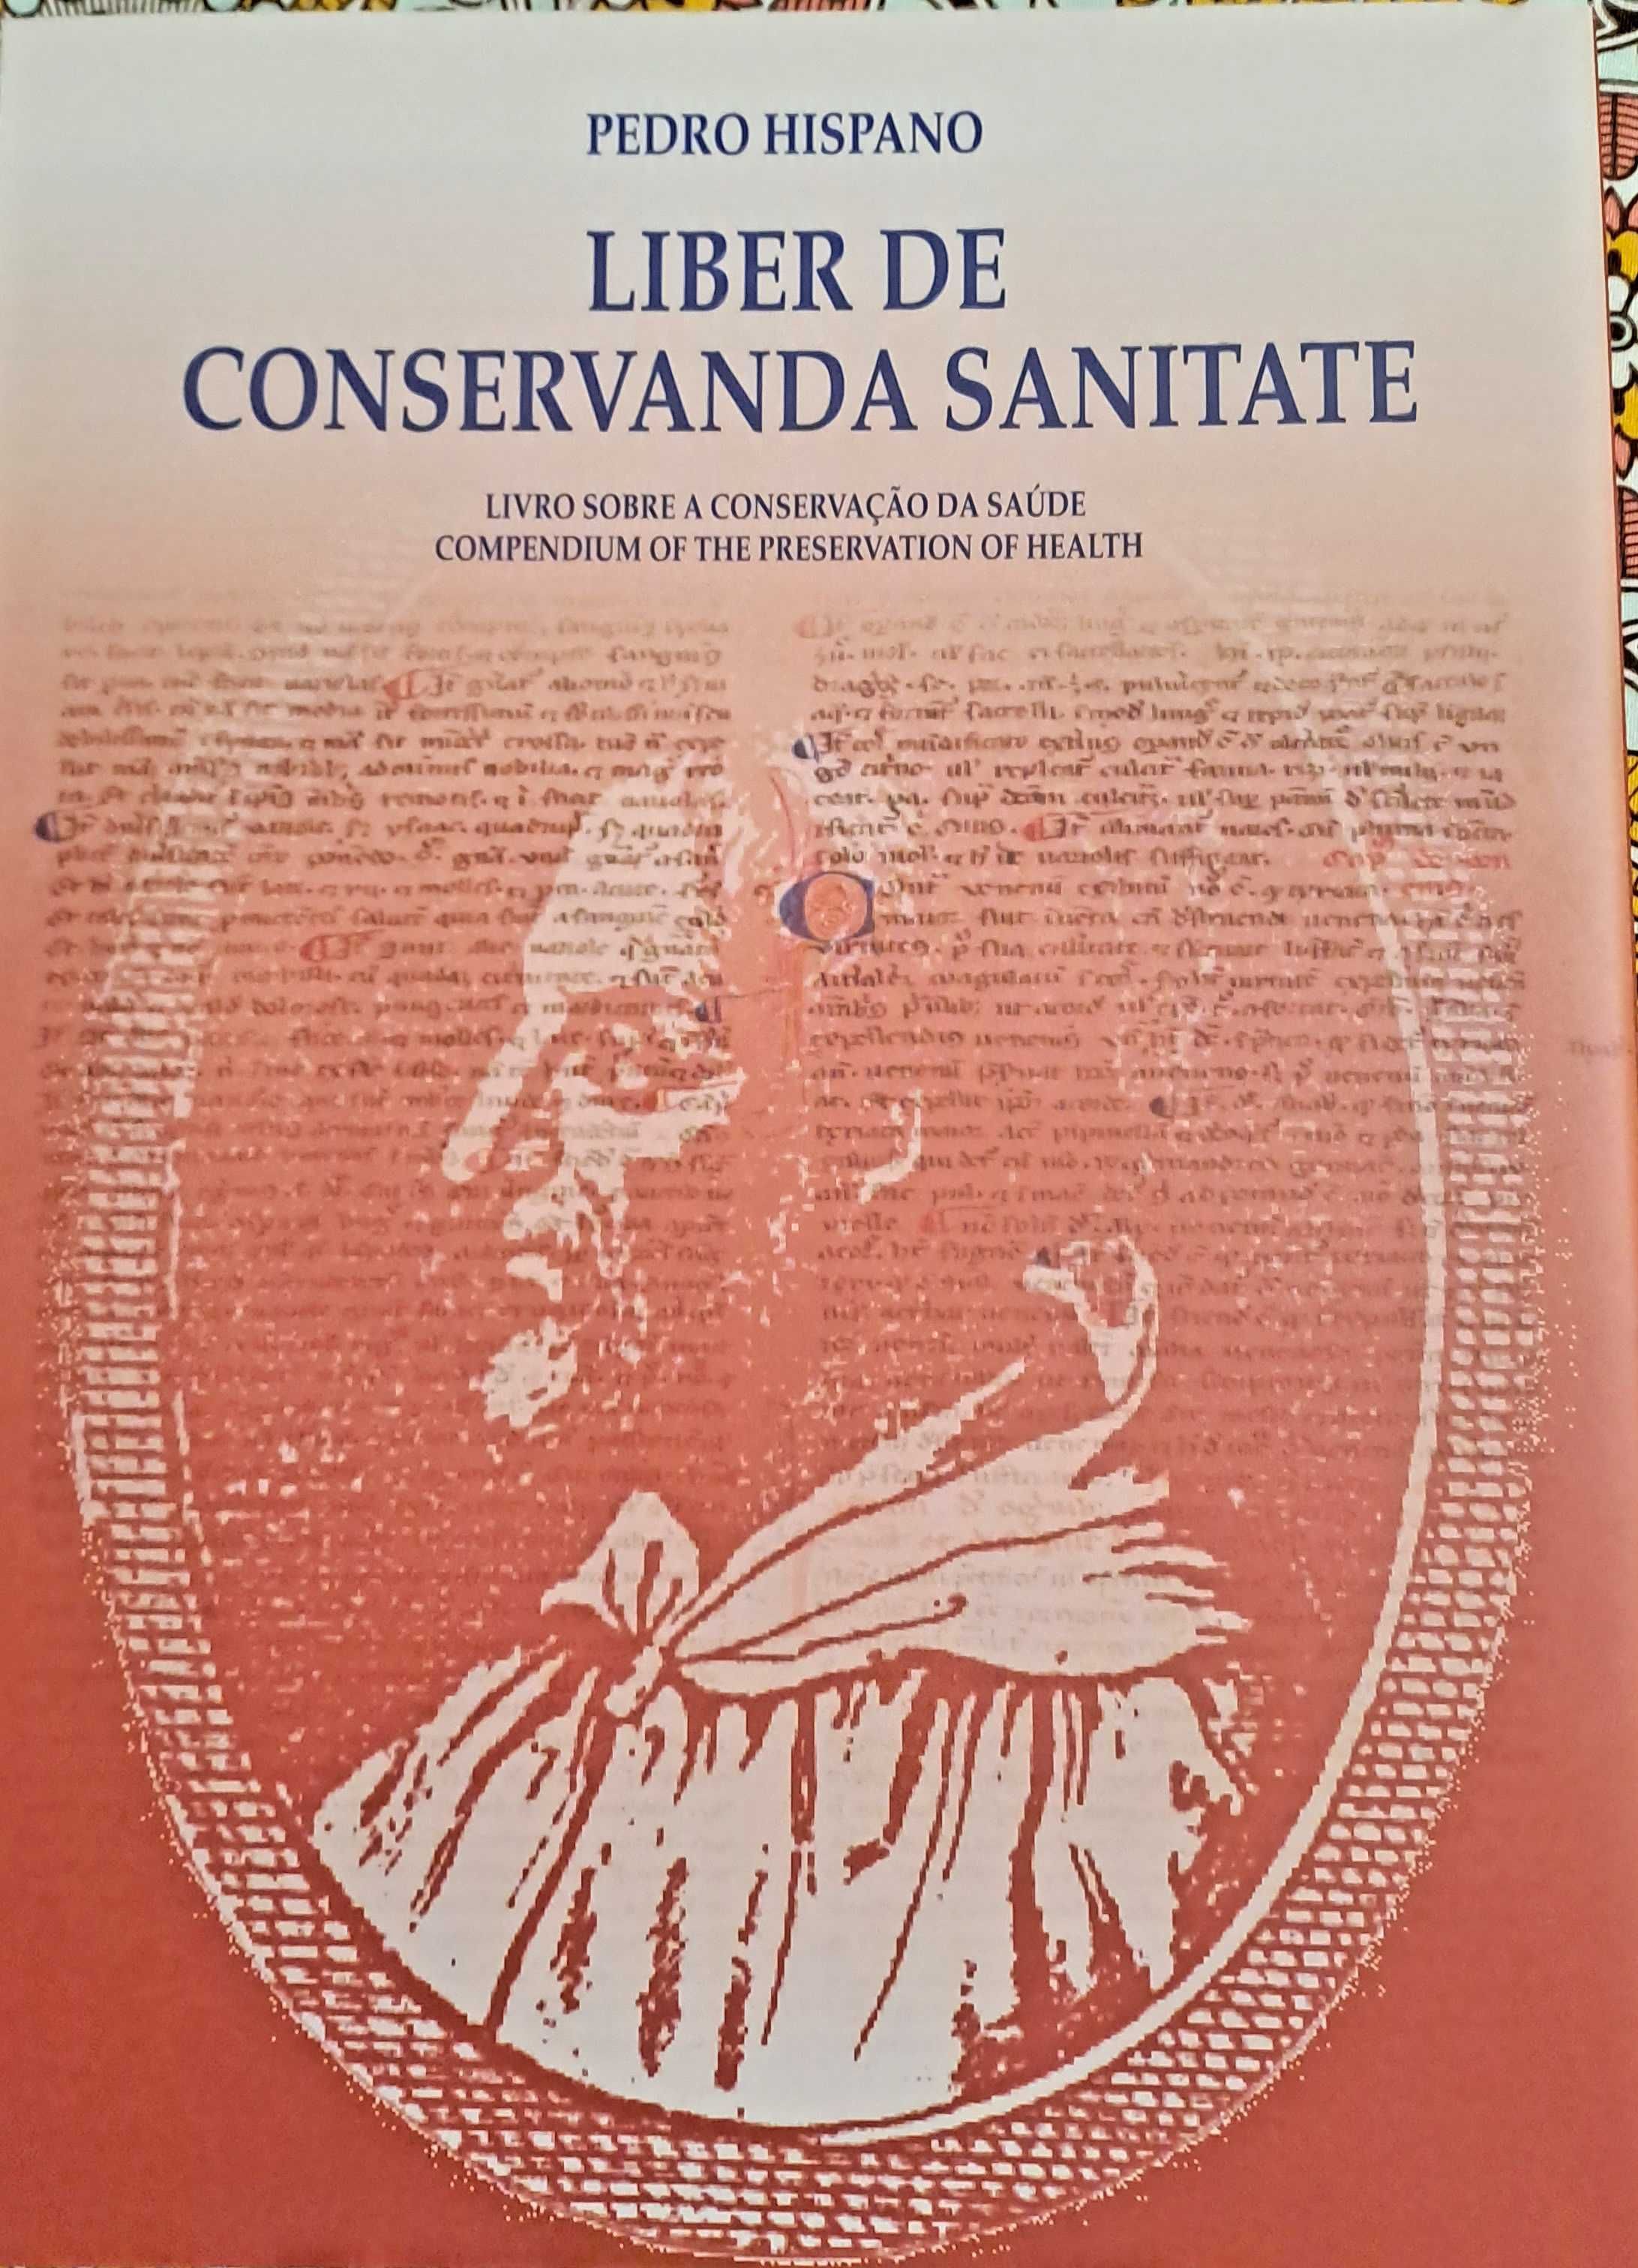 Conservanda Sanitate - Livro sobre a conservação da saúde